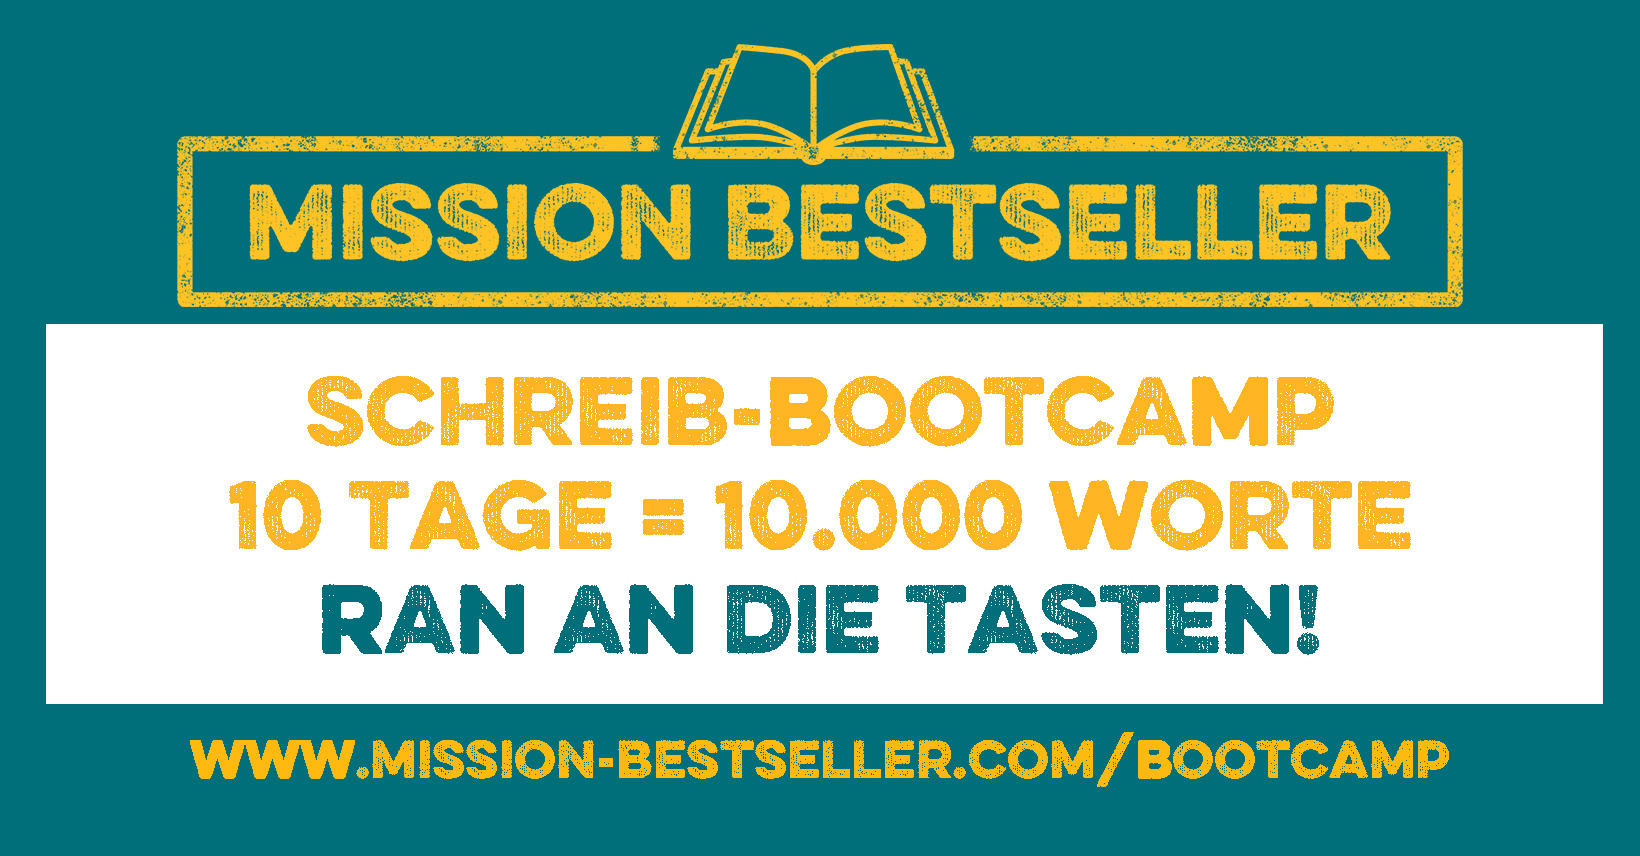 Mission Bestseller online Schreib-Bootcamp - 10 Tage = 10.000 Worte - ran an die tasten!